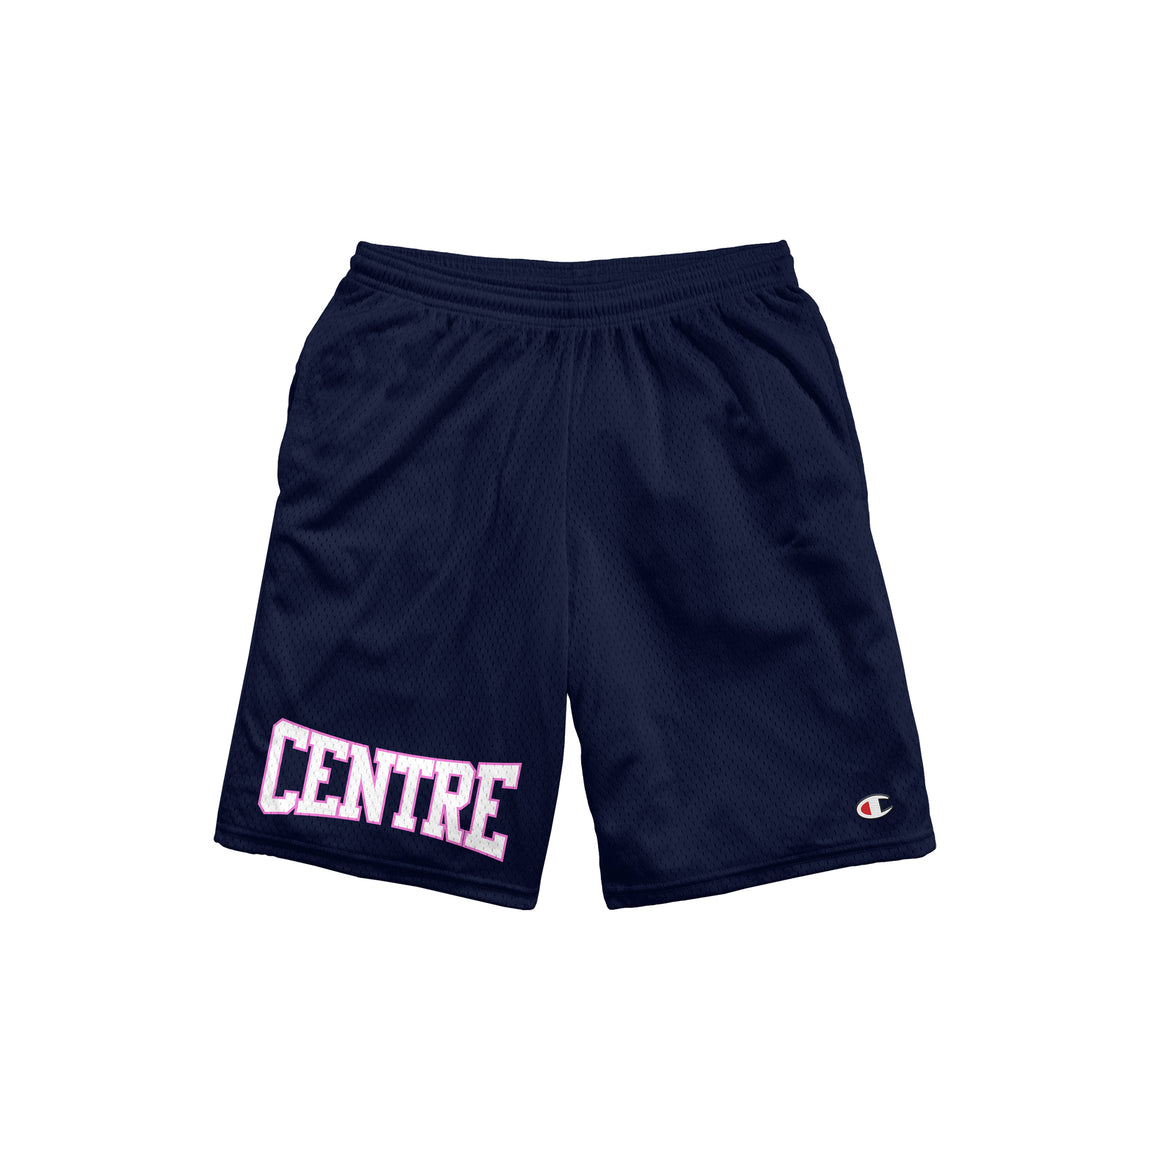 Centre Gridiron Shorts (Navy) - Centre Gridiron Shorts (Navy) - 